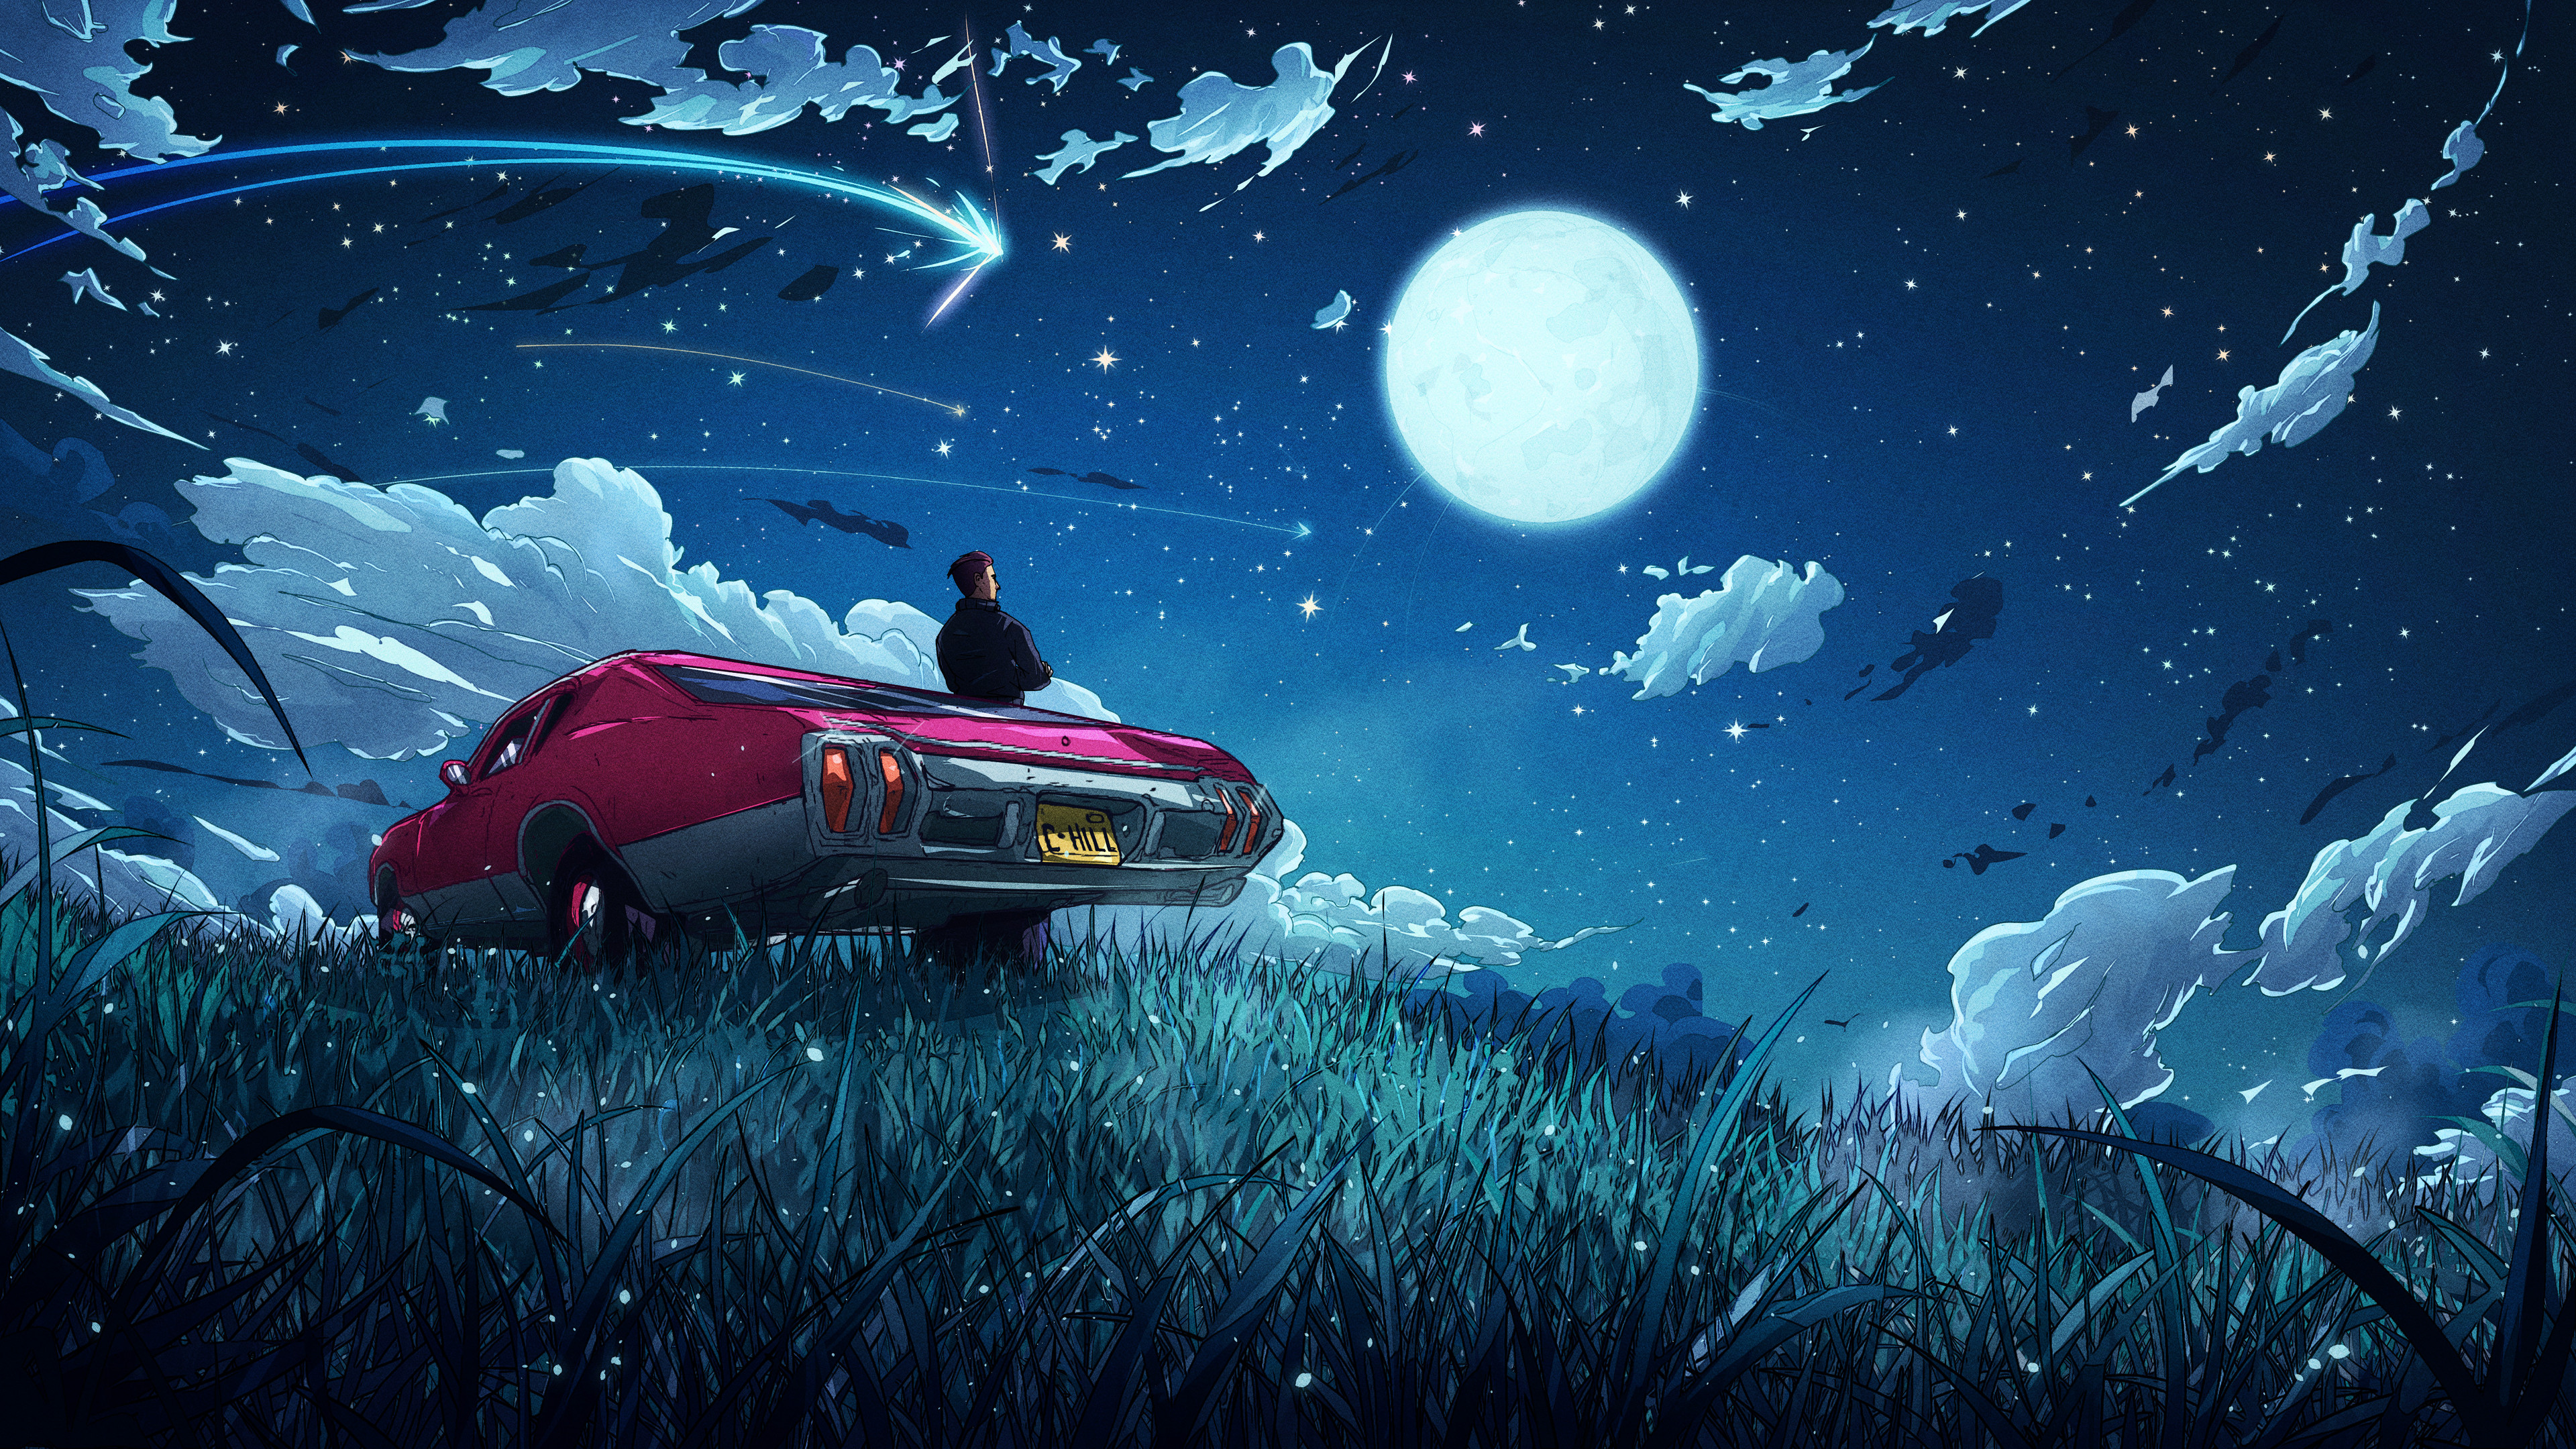 Christian Benavides Digital Art Fantasy Art Car Moonlight Artwork Moon Grass Sky Stars Night Night S 3840x2160